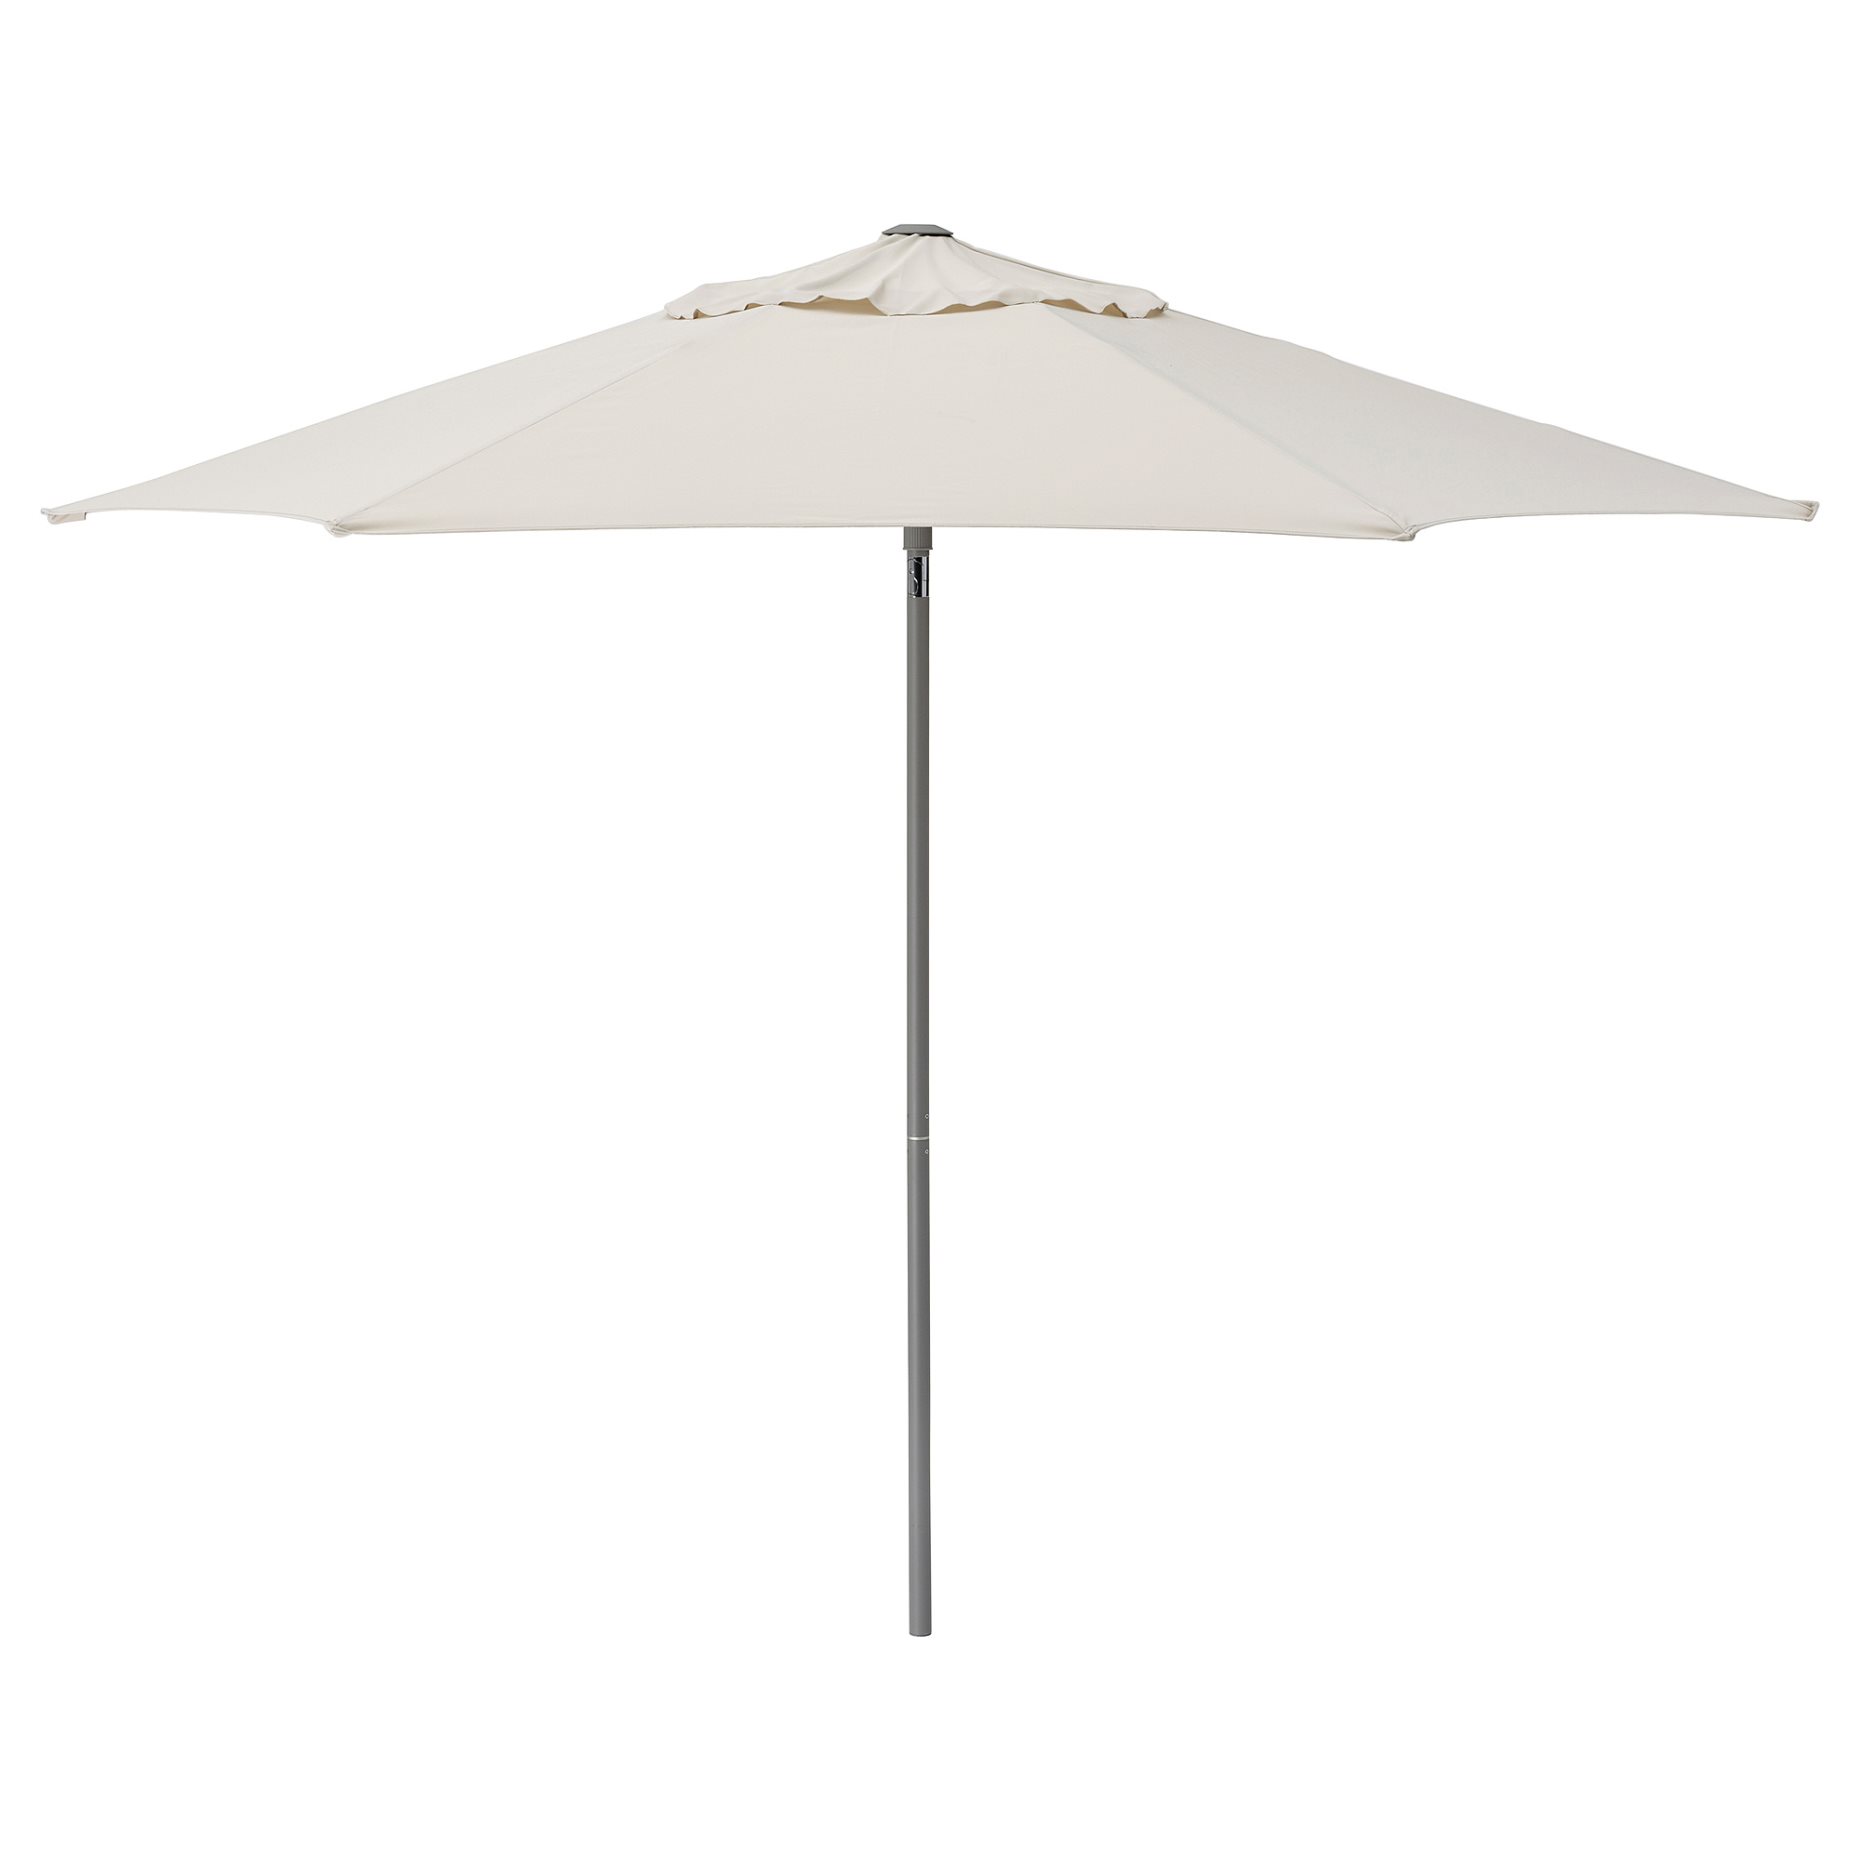 JOGGESÖ, parasol, 300 cm, 905.318.96